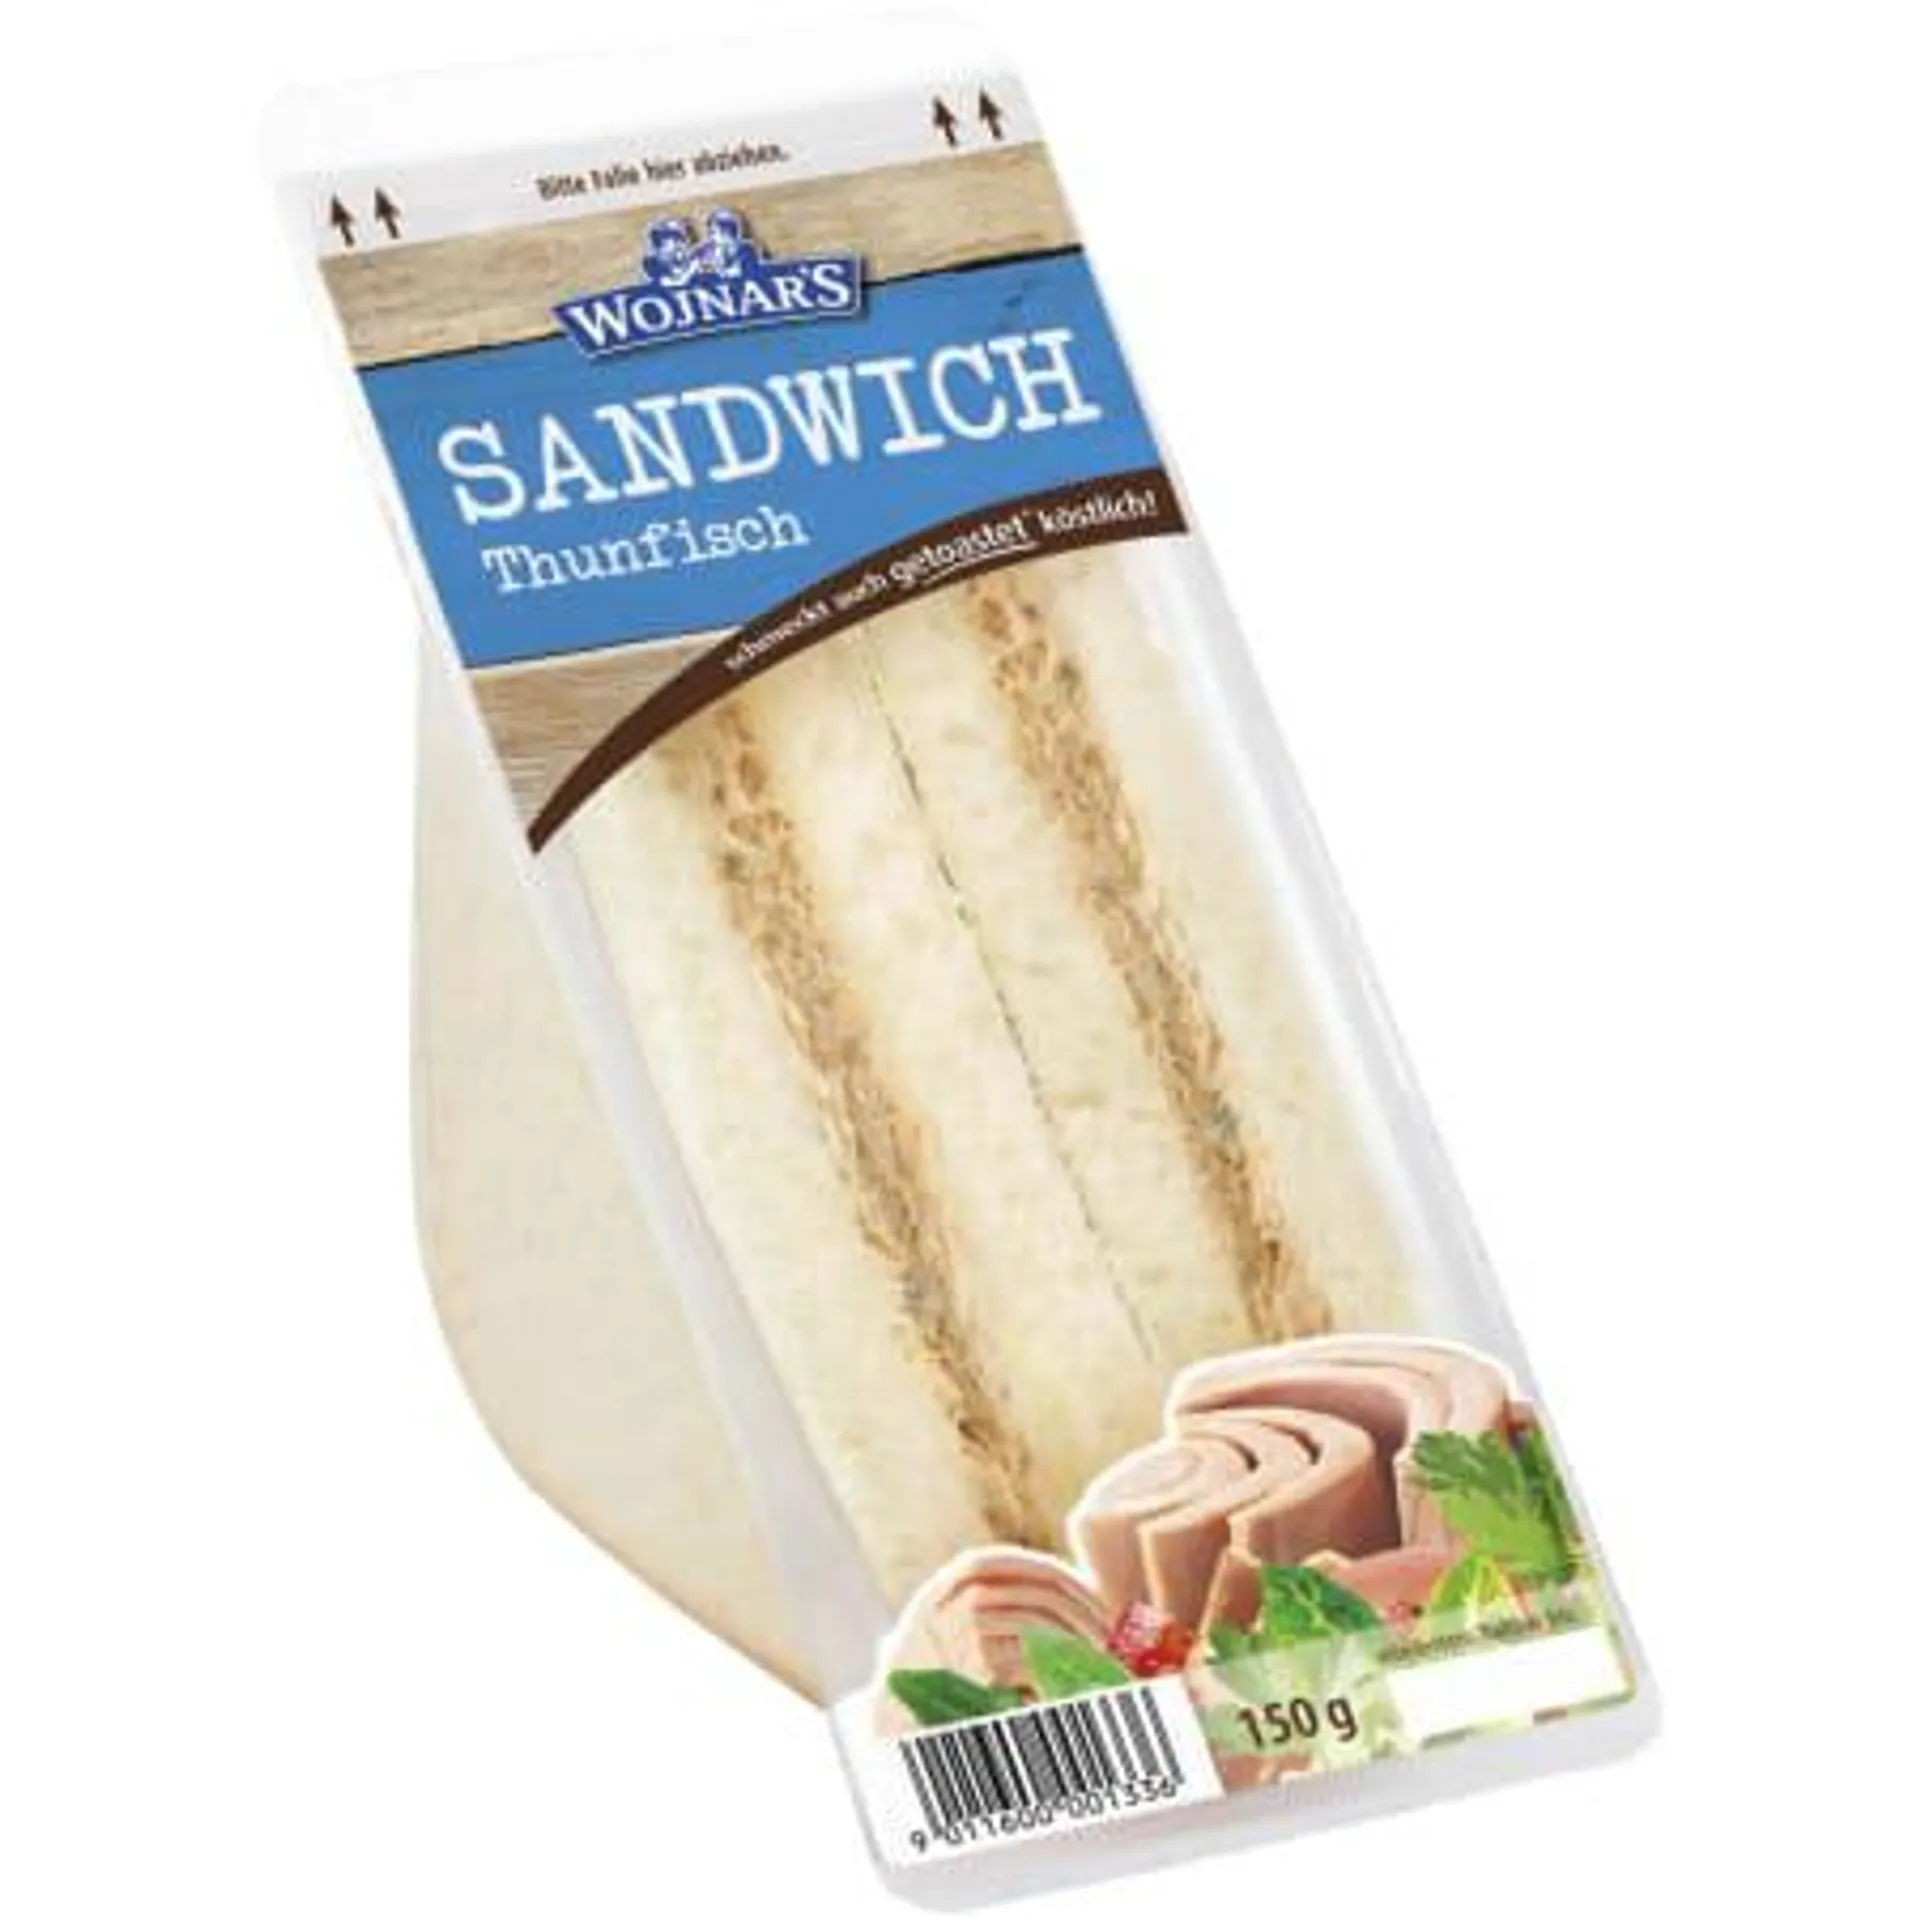 Sandwich Thunfisch